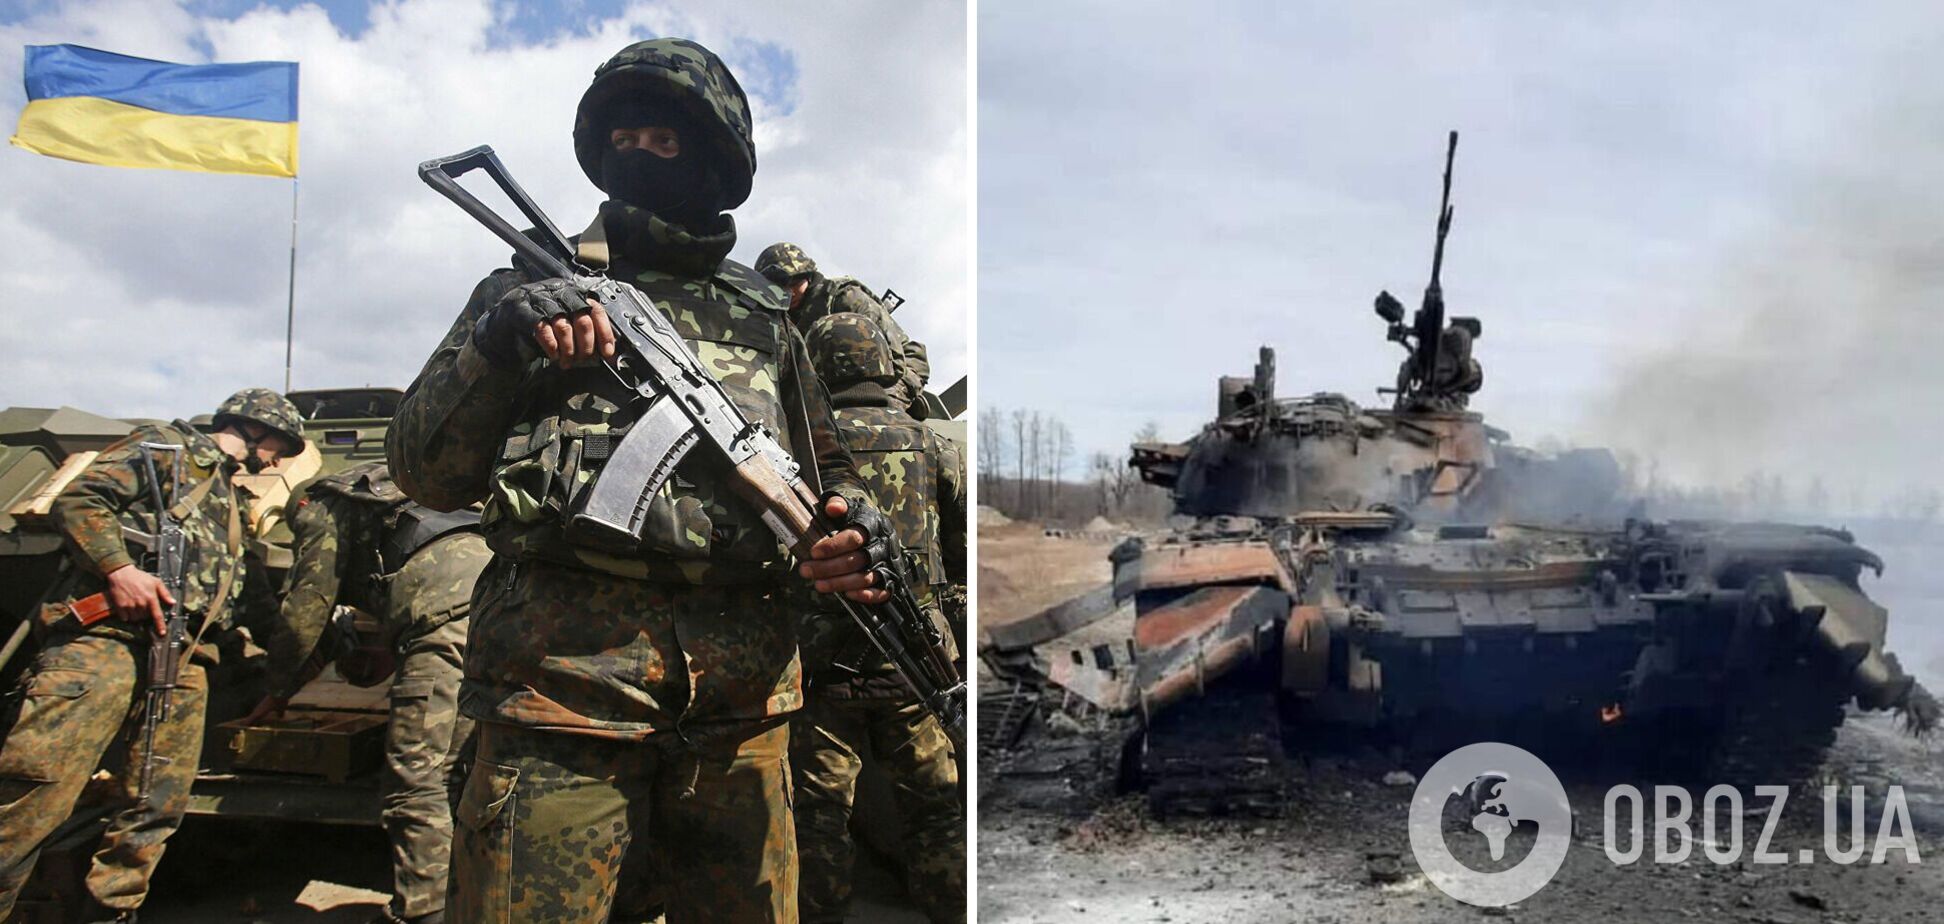 Сили оборони півдня очистили землю України від 55 окупантів та ворожої техніки – ОК 'Південь'